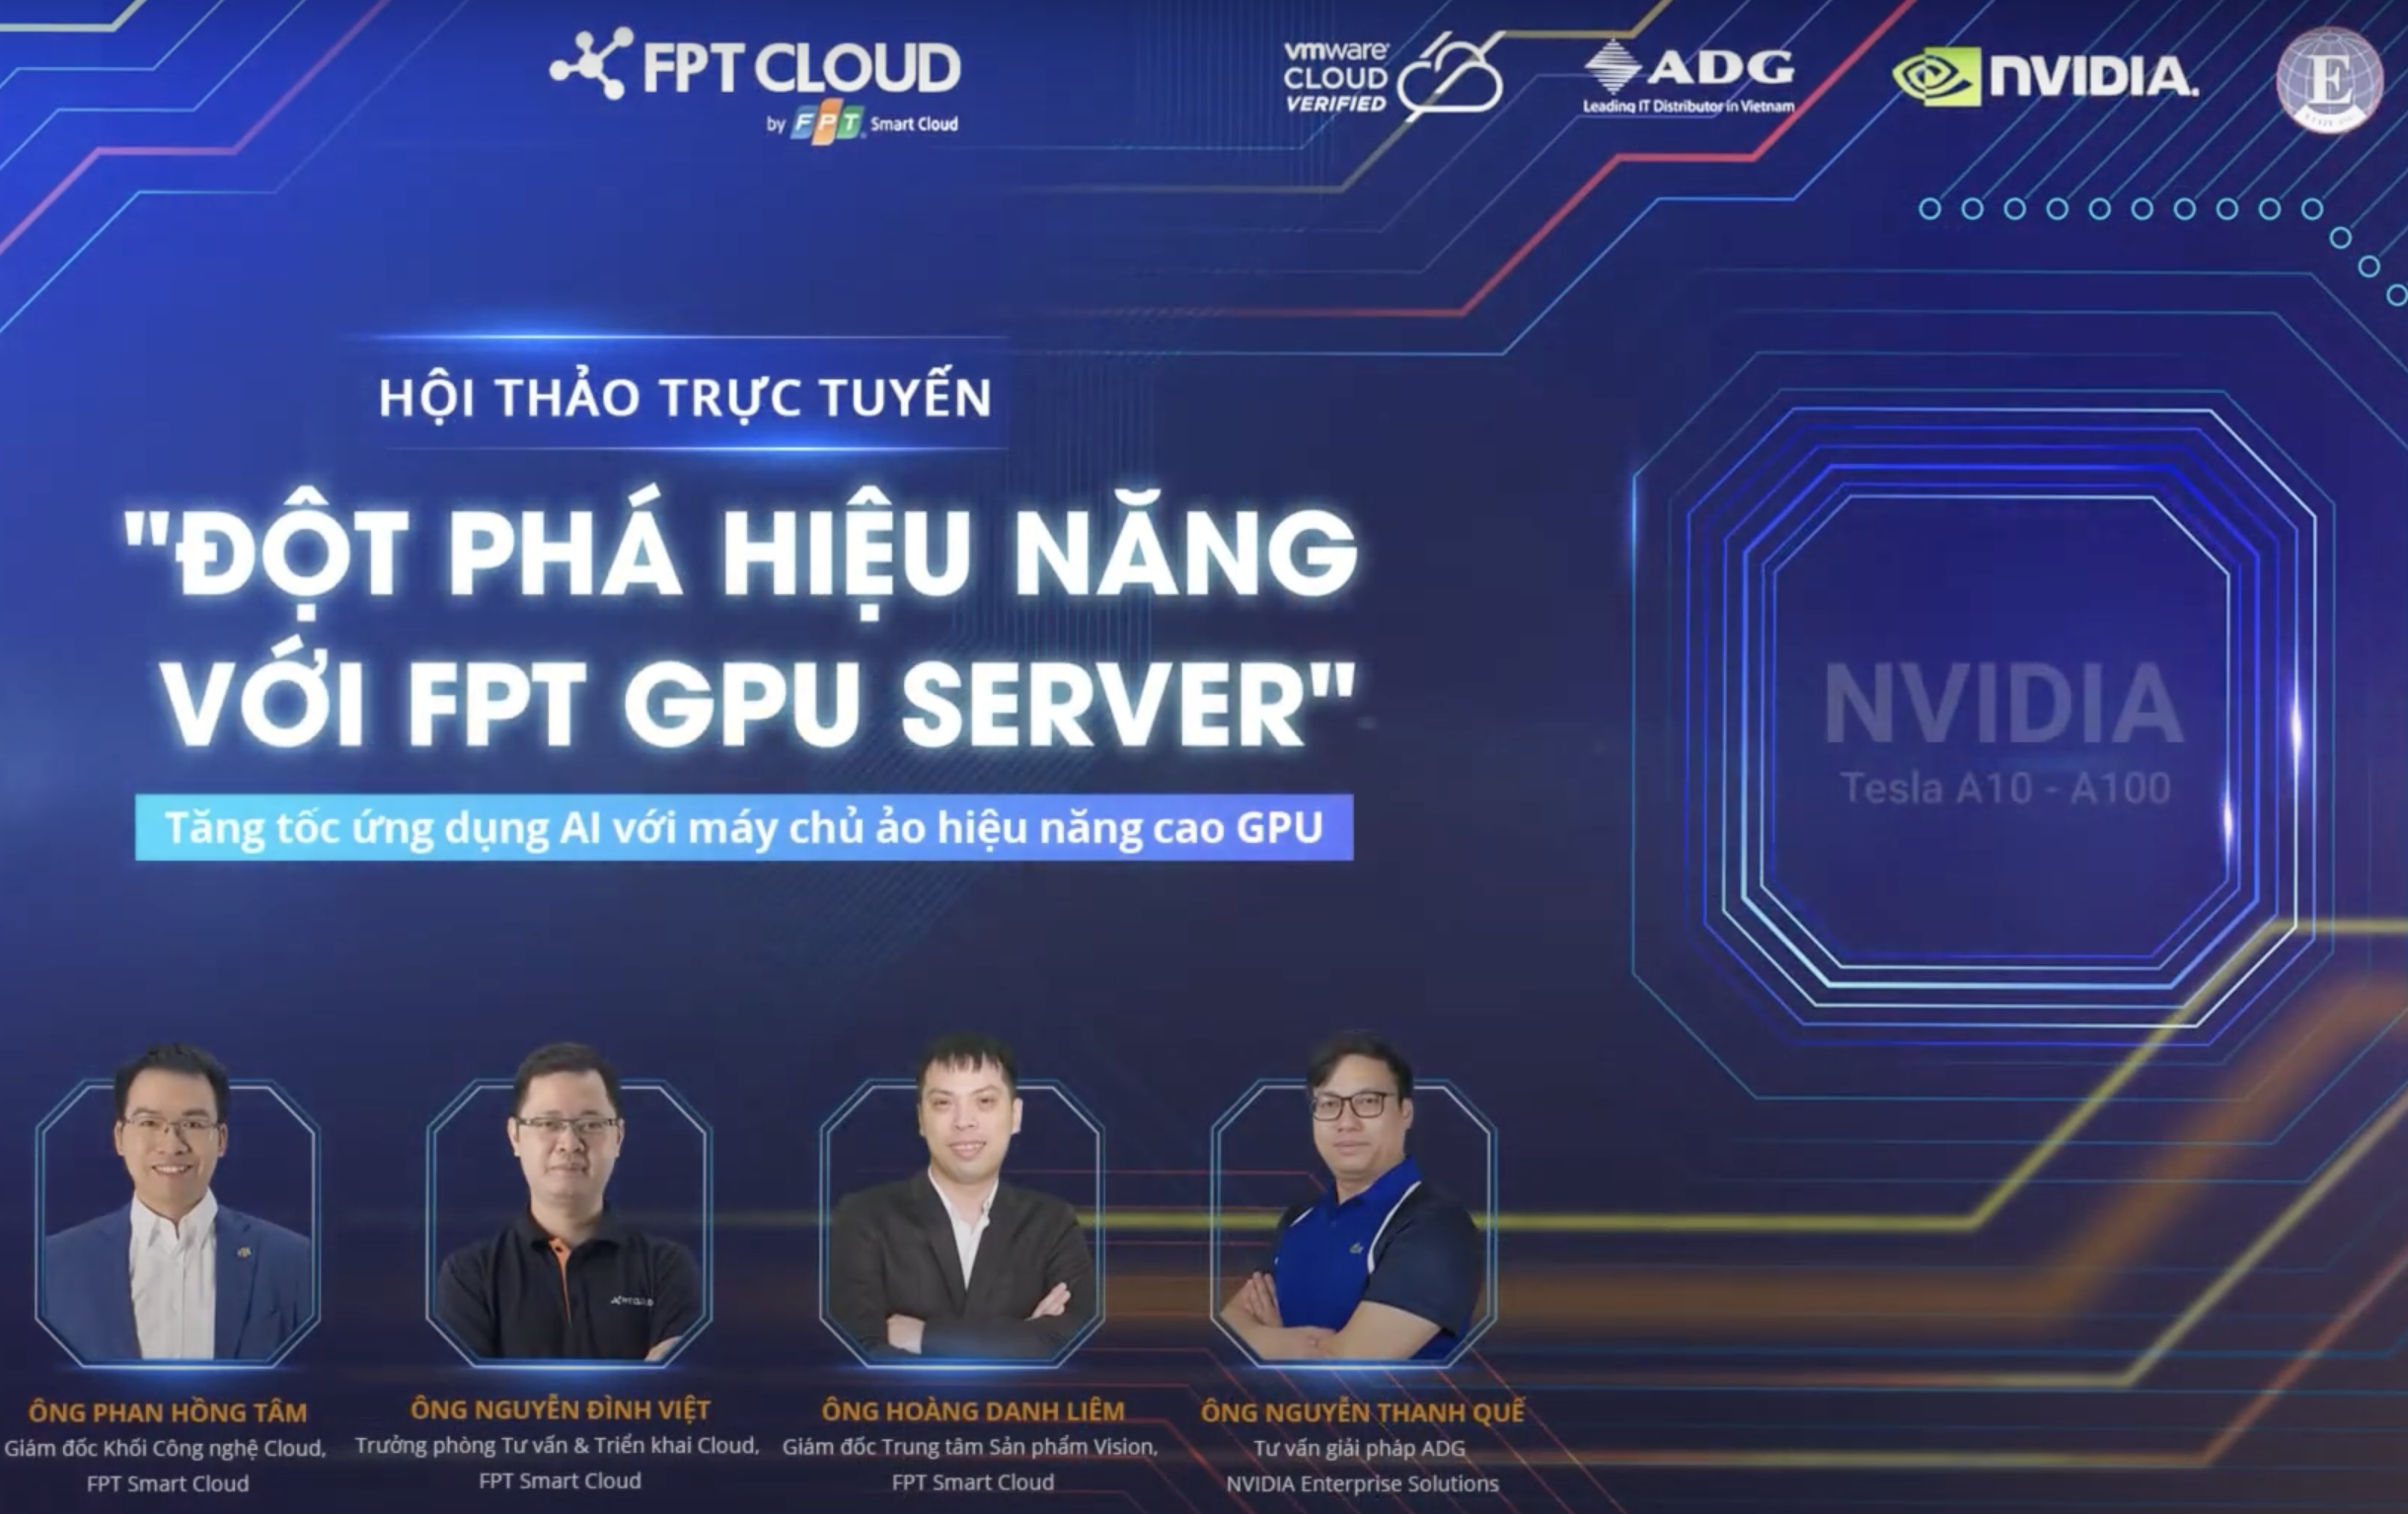 Hội Thảo Trực Tuyến "Đột Phá Hiệu Năng Với FPT GPU Server"